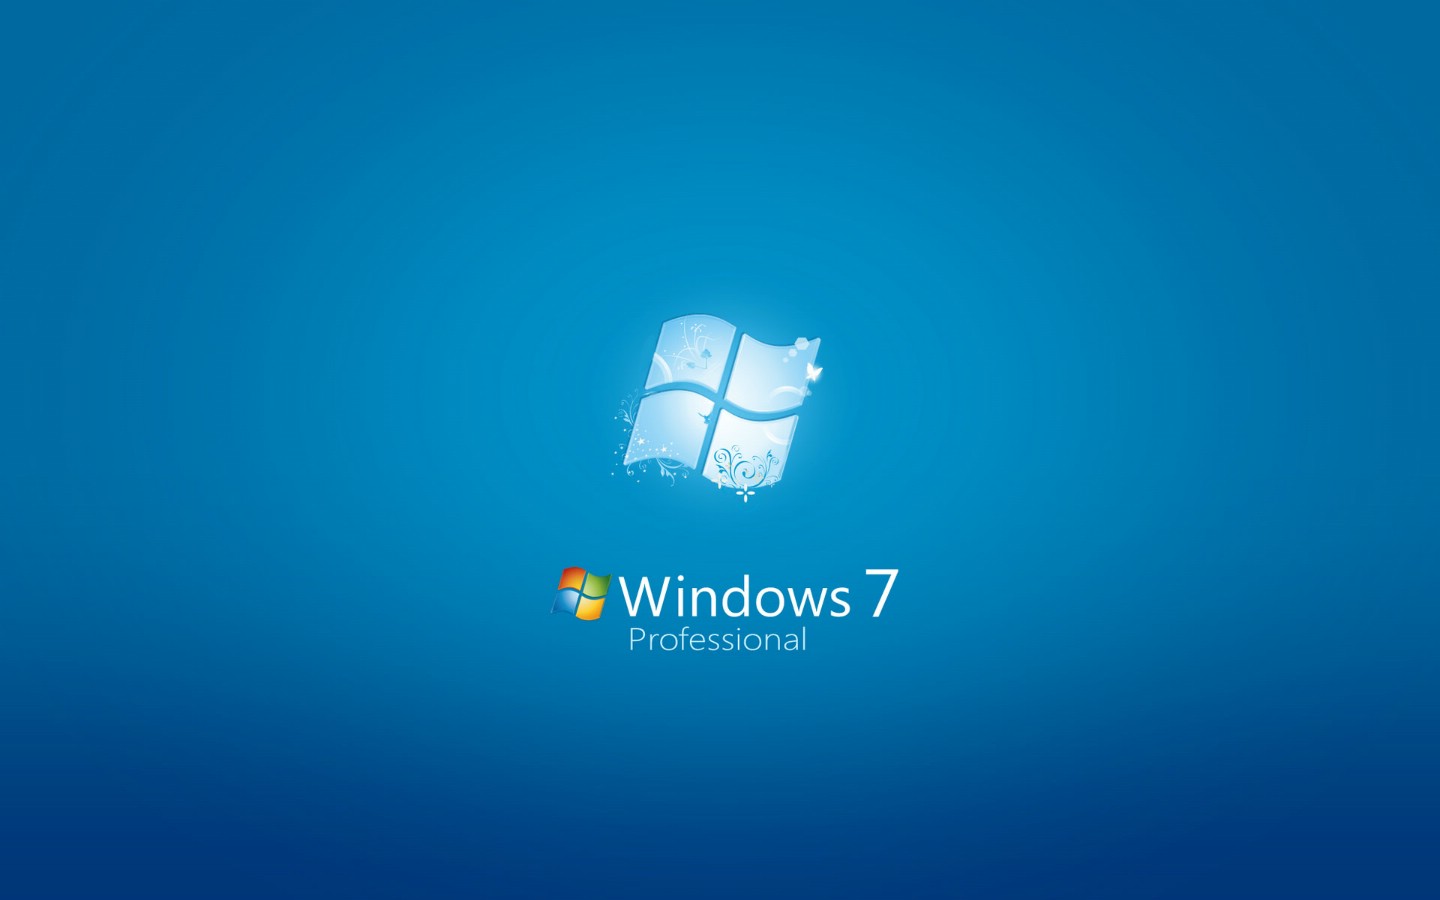 壁纸1440x900Windows7 5 10壁纸 Windows7壁纸 Windows7图片 Windows7素材 系统壁纸 系统图库 系统图片素材桌面壁纸